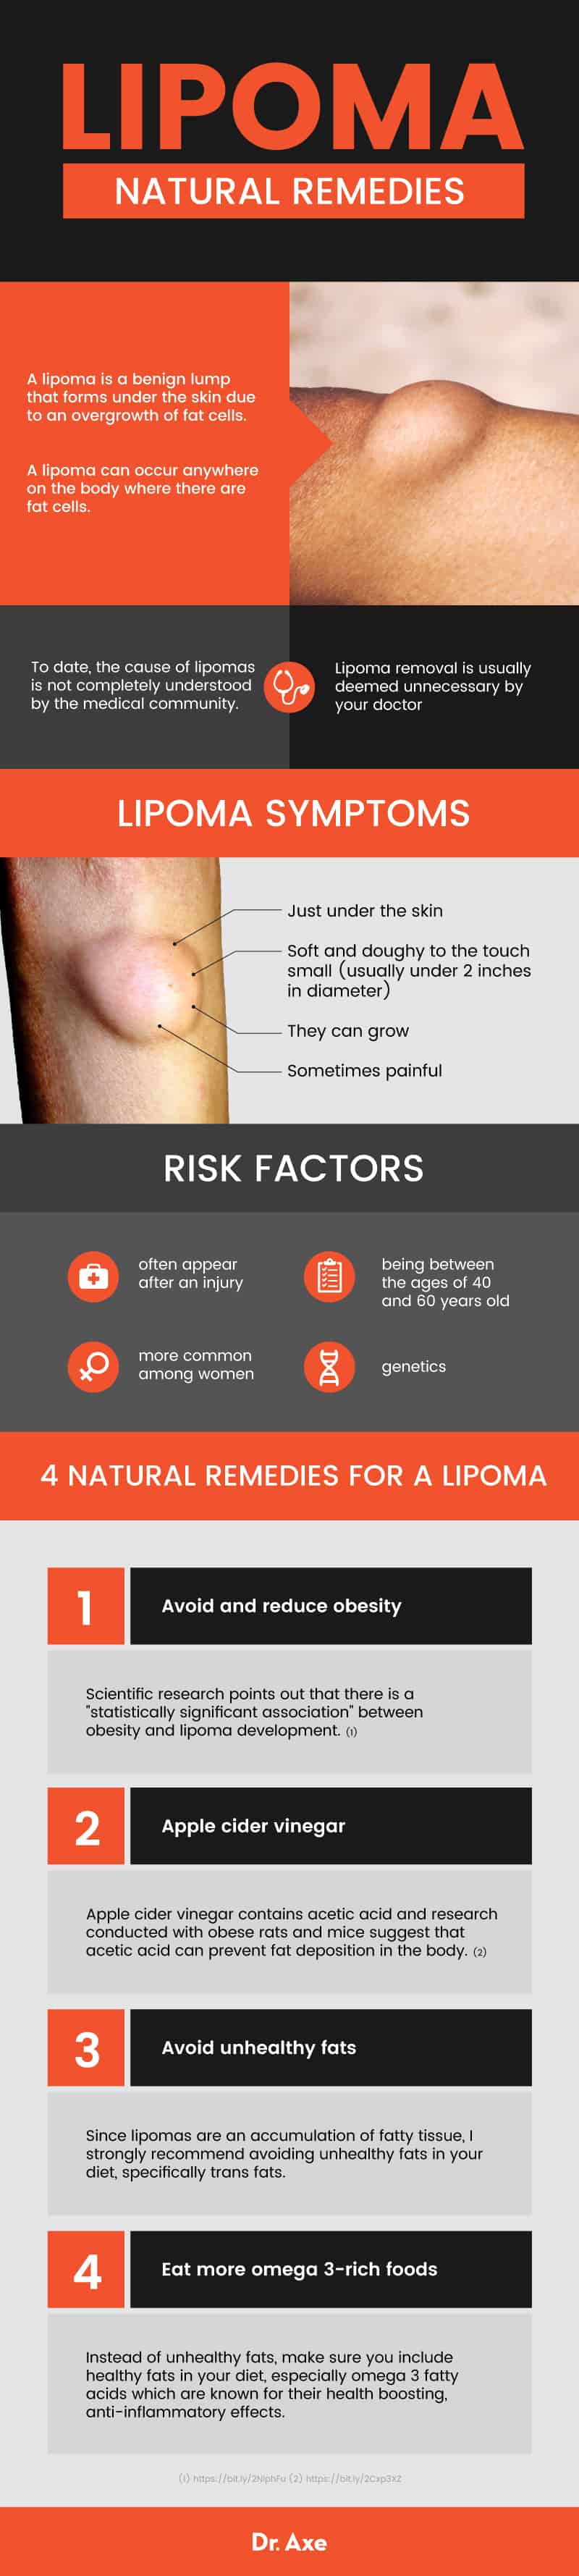 Lipoma removal - Dr. Axe